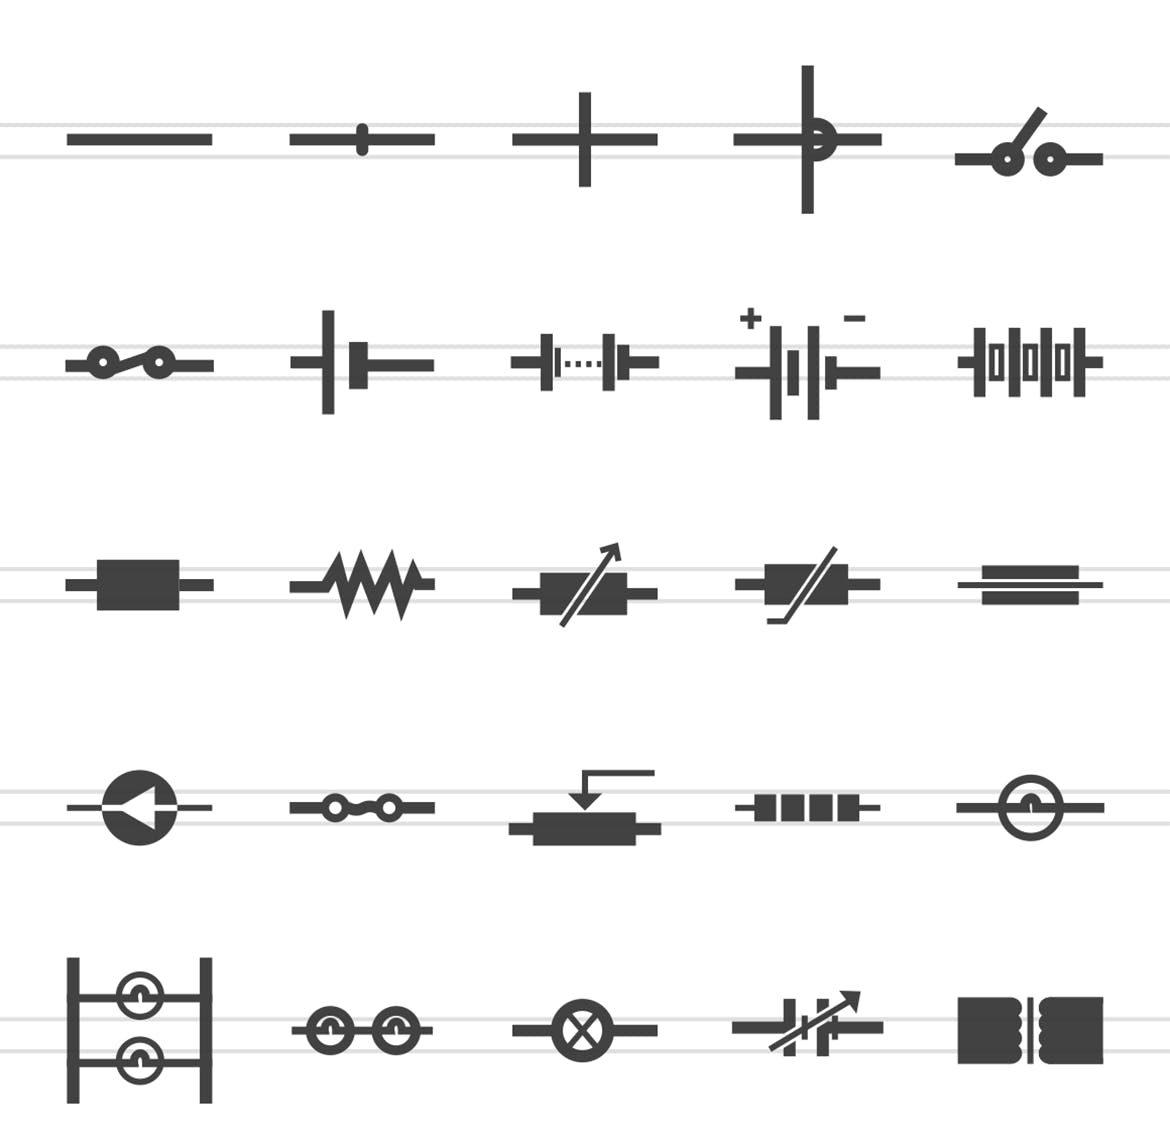 50枚电路线路板主题黑色字体蚂蚁素材精选图标 50 Electric Circuits Glyph Icons插图(1)